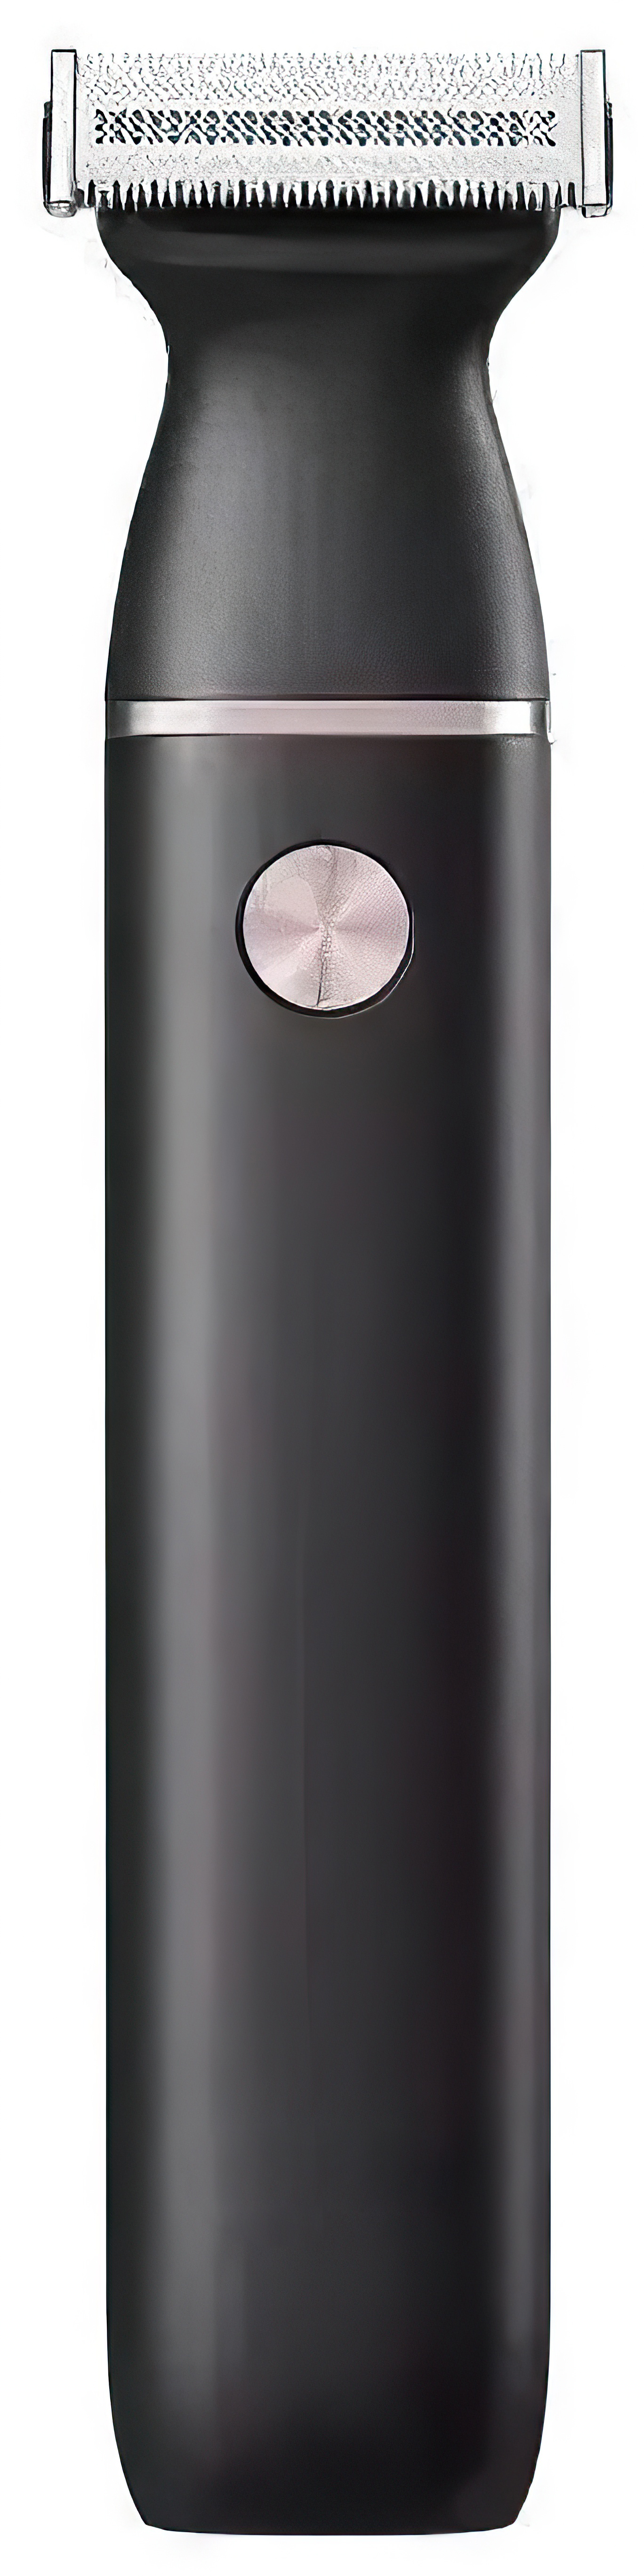 Электробритва Xiaomi Electric Shaver Small Razor (ET2) электробритва mijia electric shaver s301 black